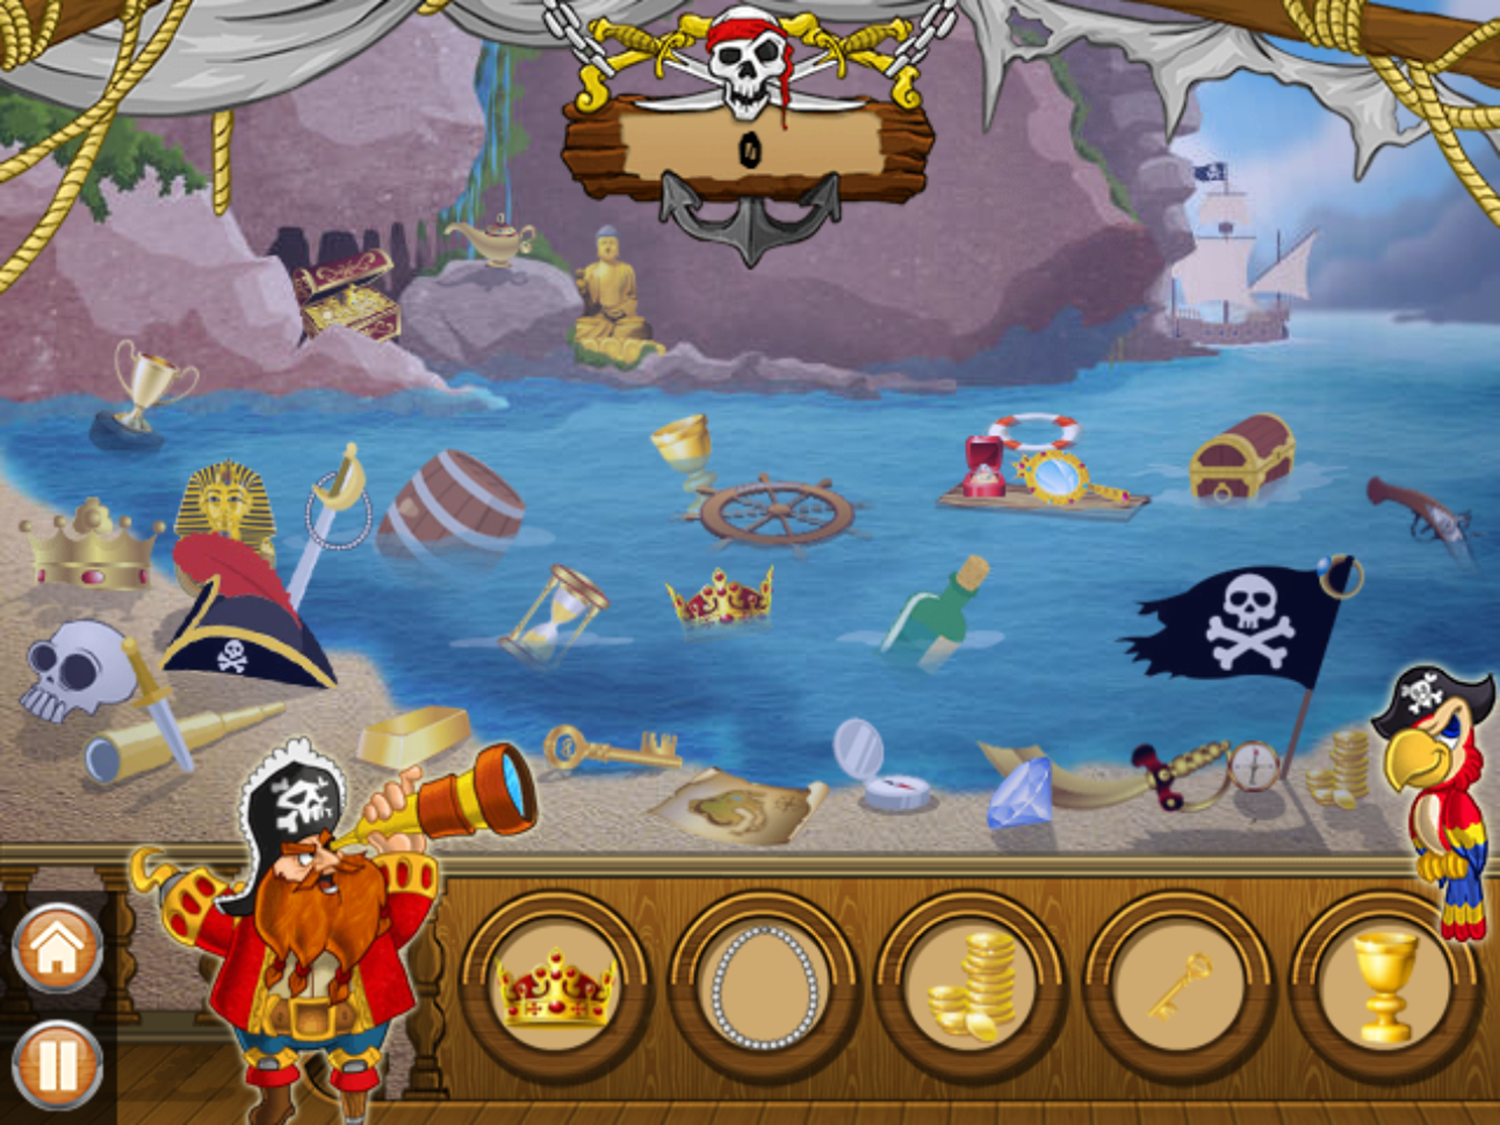 Hidden Objects Pirate Adventures Game Next Level Screenshot.